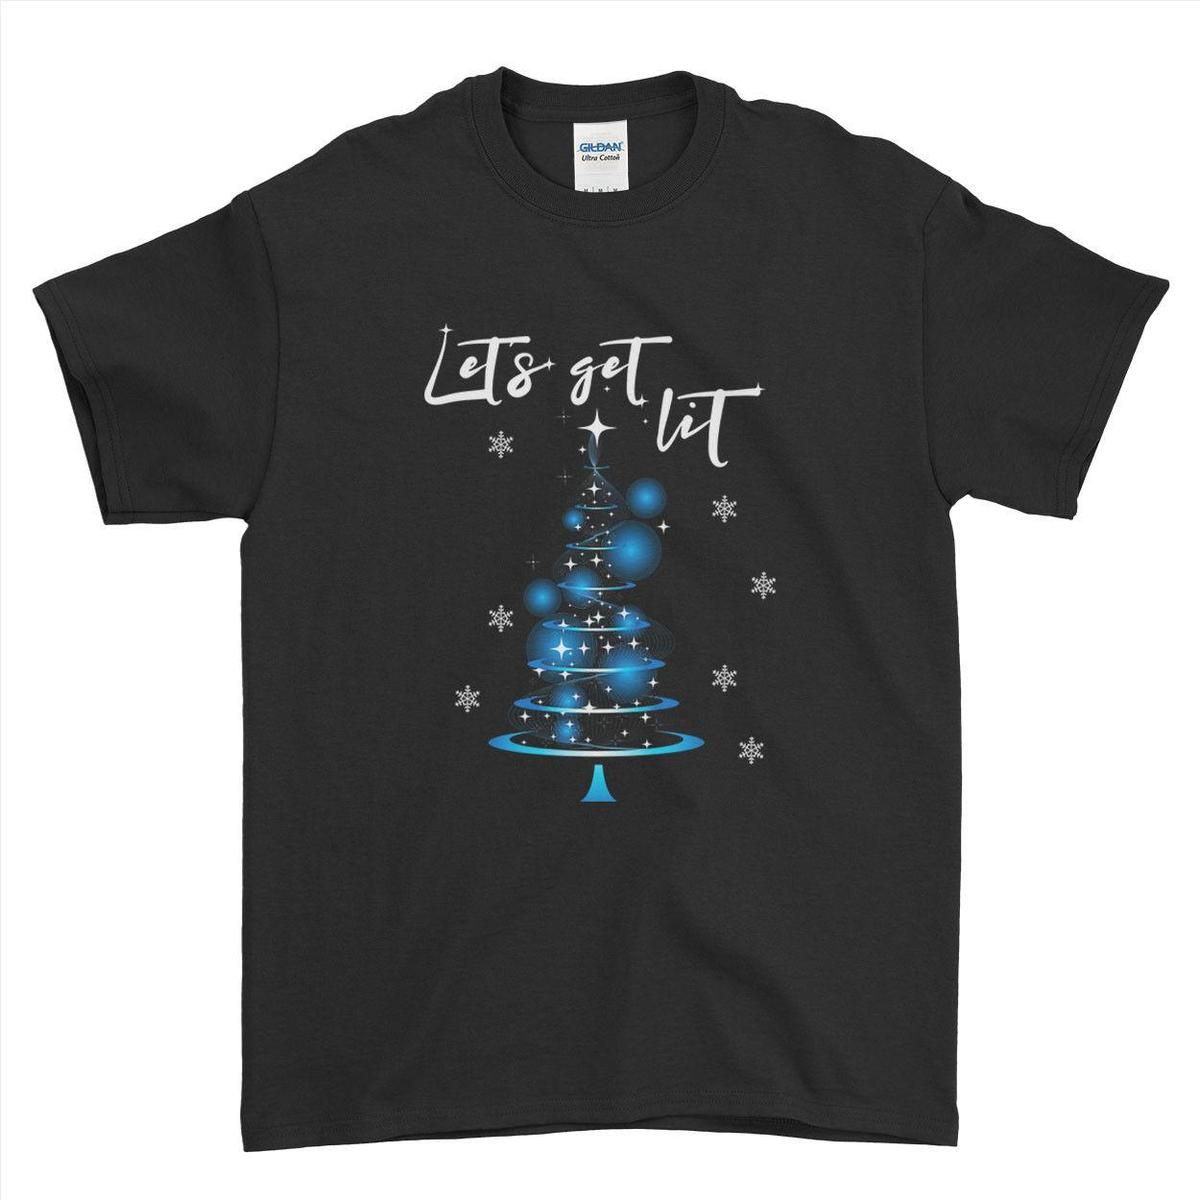 Großhandel Lassen Sie Uns Lit Weihnachtsbaum Lustigen Stil Mens Womens Kids T Shirt Bekommen Von Amesion89 $8 74 Auf De Dhgate